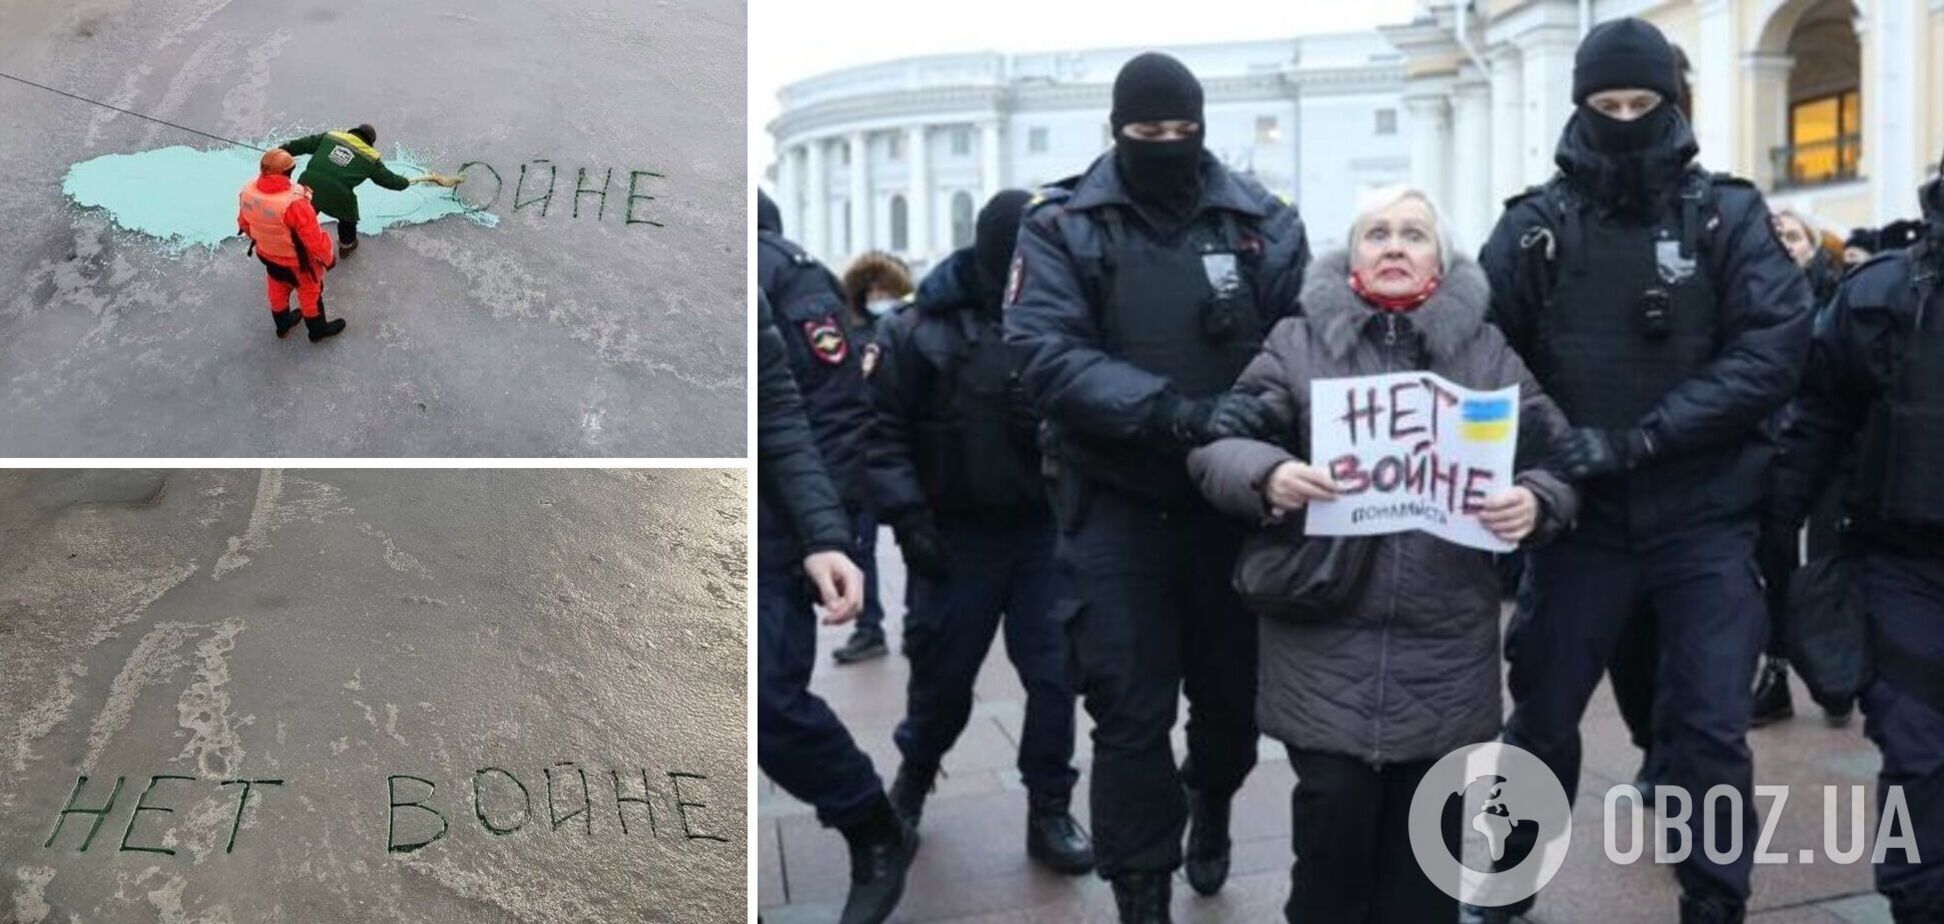 В России на льду реки протестующие написали 'Нет войне': на место вызвали коммунальщиков. Фото